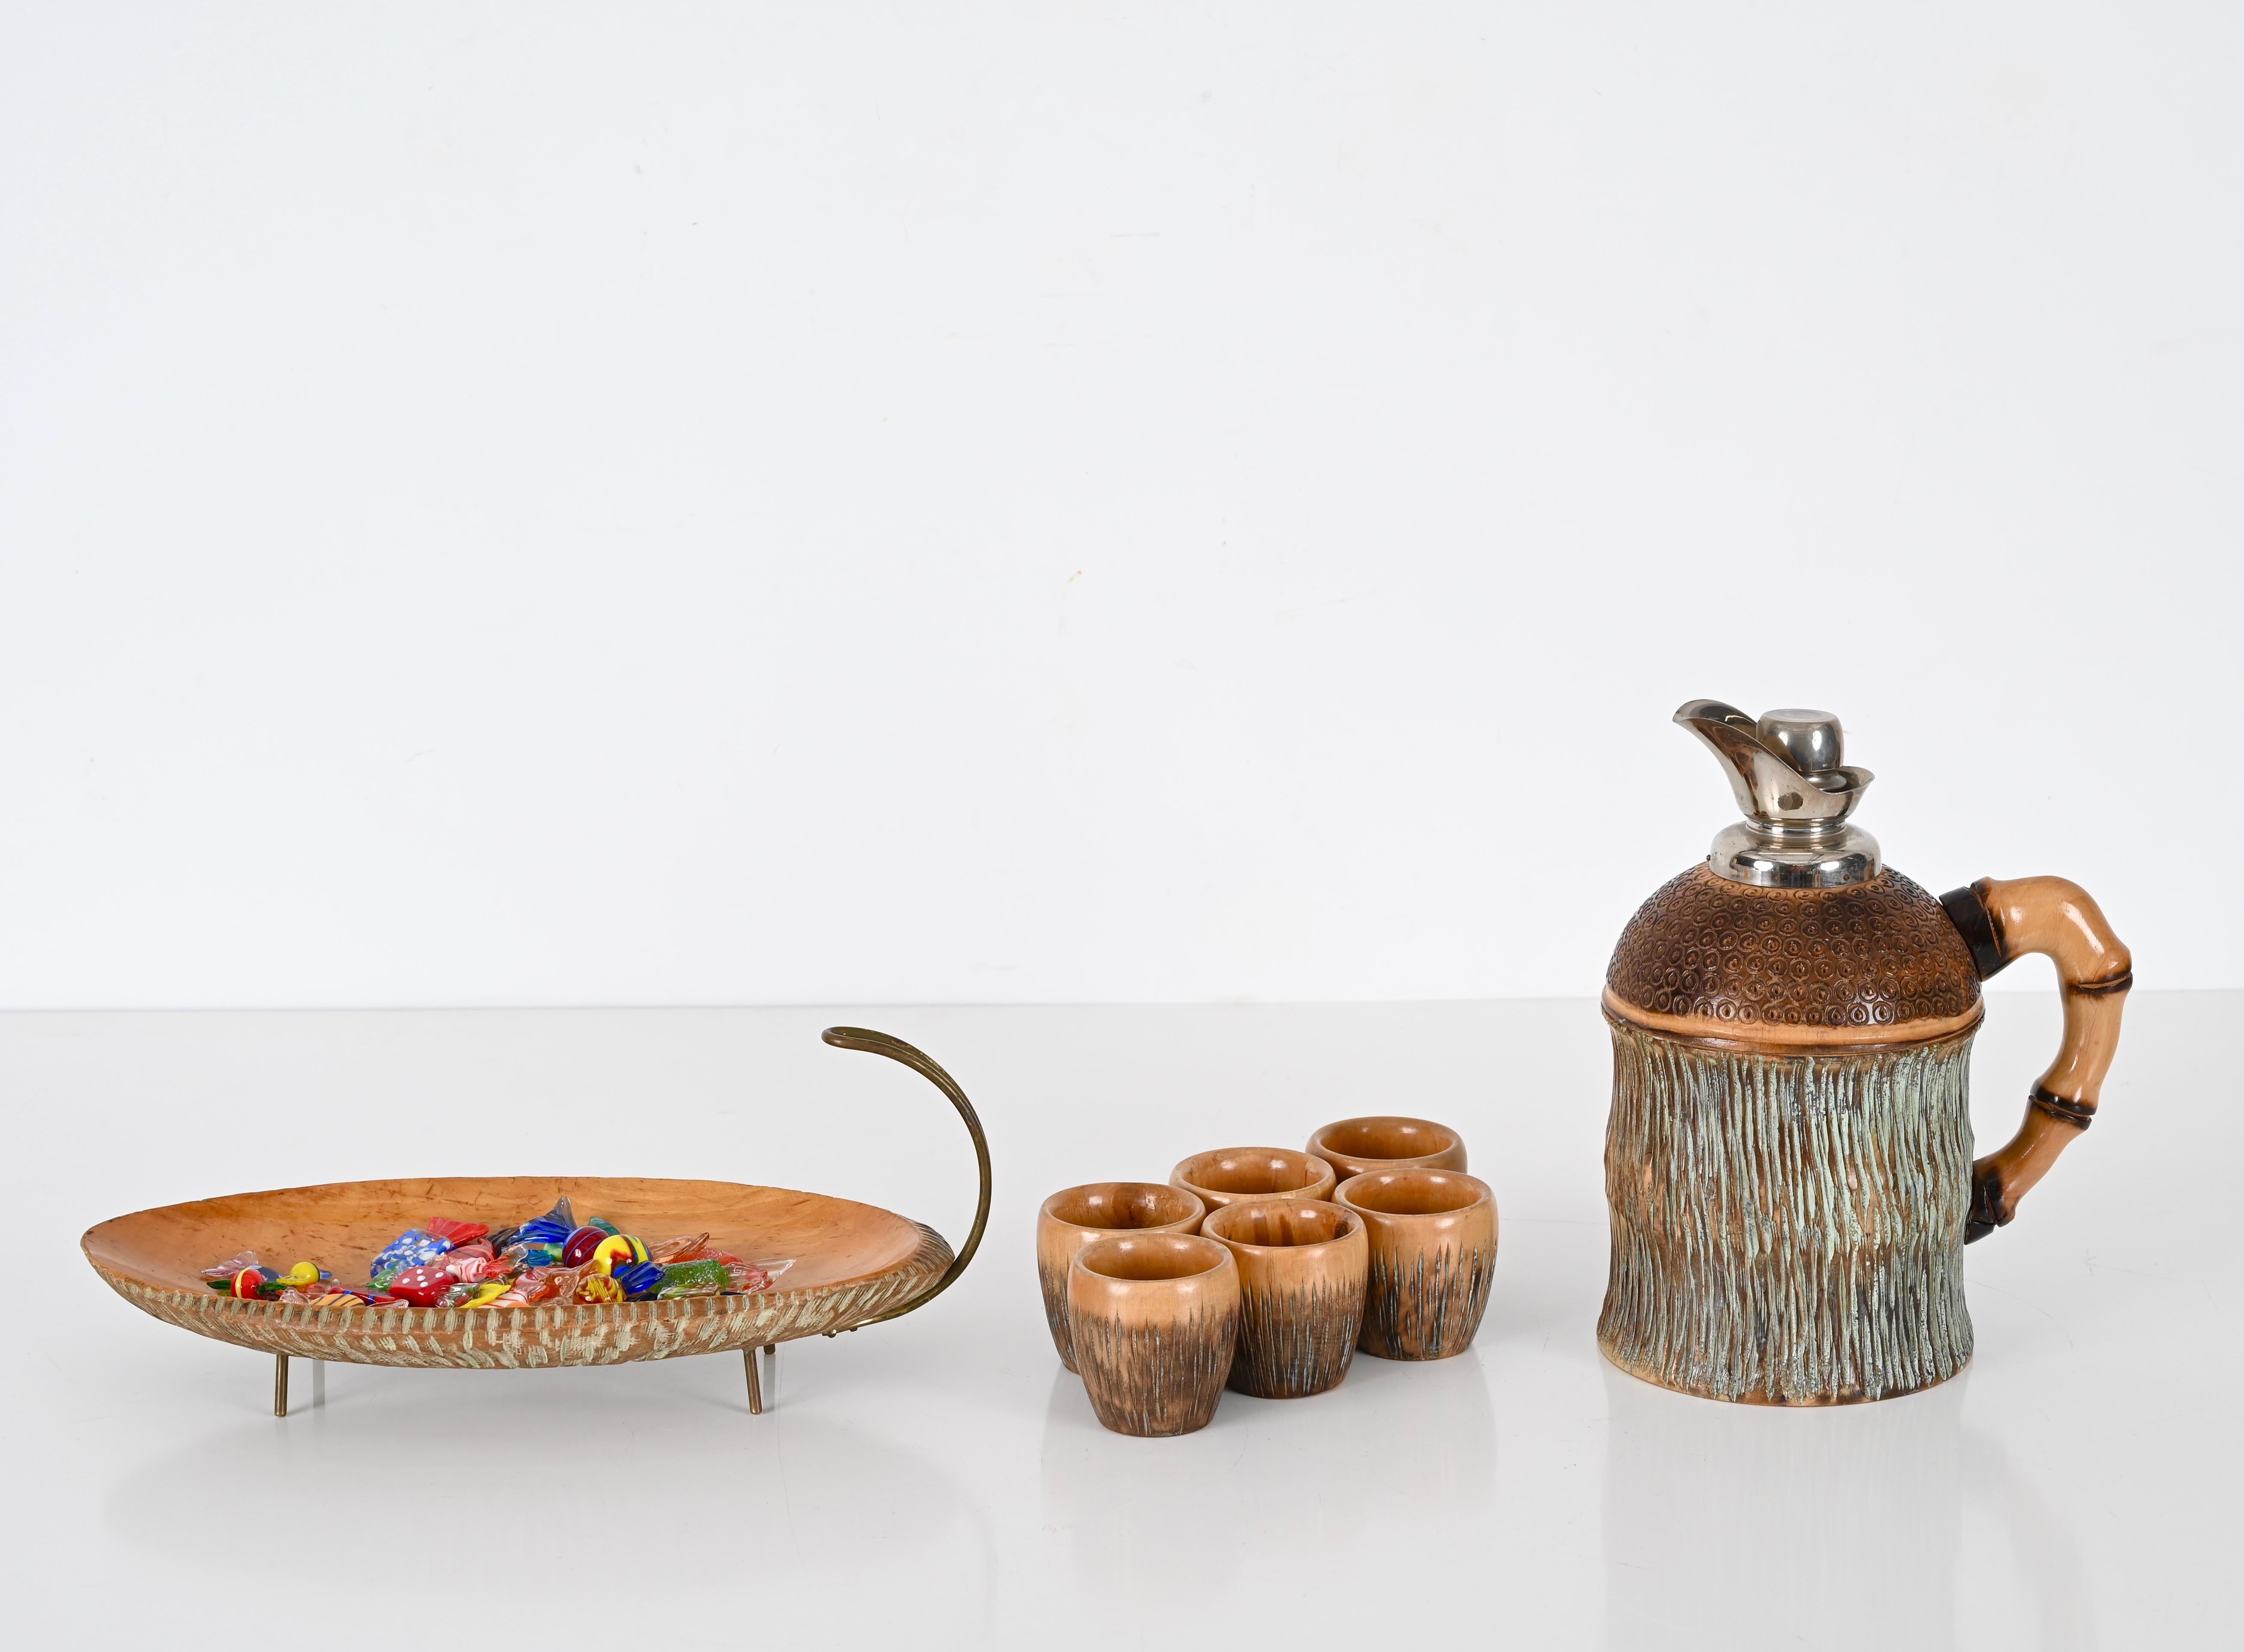 Schönes Bar-Set aus geschnitztem Holz und Messing. Dieses schöne Set wurde von Aldo Tura entworfen und in den 1950er Jahren von Macabo in Mailand hergestellt.

Das Set besteht aus einem Krug, 6 Gläsern und einer Schale. Dieses vollständig von Hand